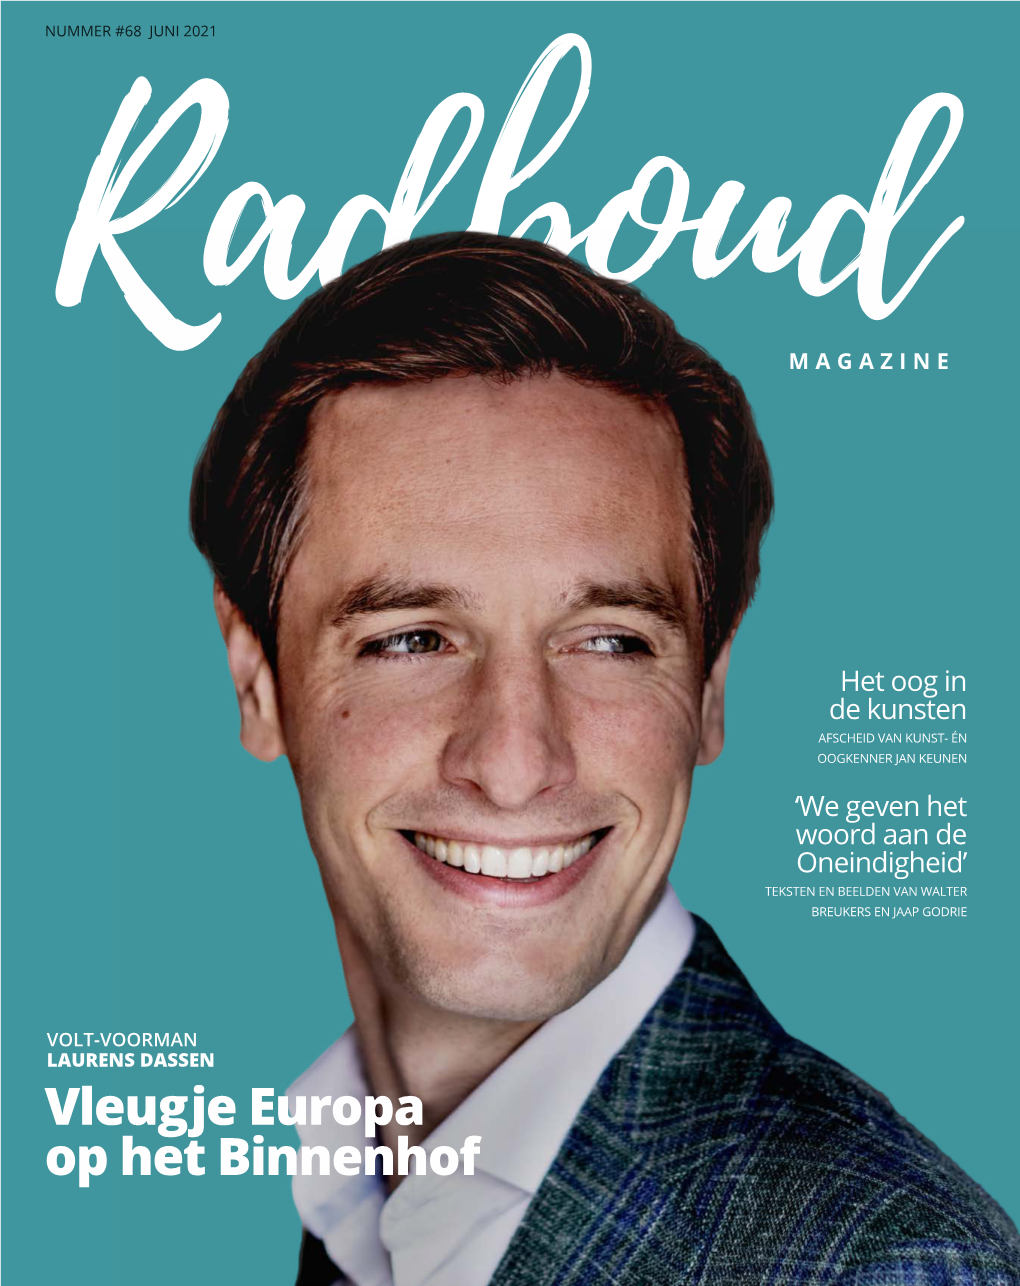 Vleugje Europa Op Het Binnenhof Colofon Radboud Magazine Is Het Kwartaalblad Voor Alumni En Relaties Van De Radboud Universiteit